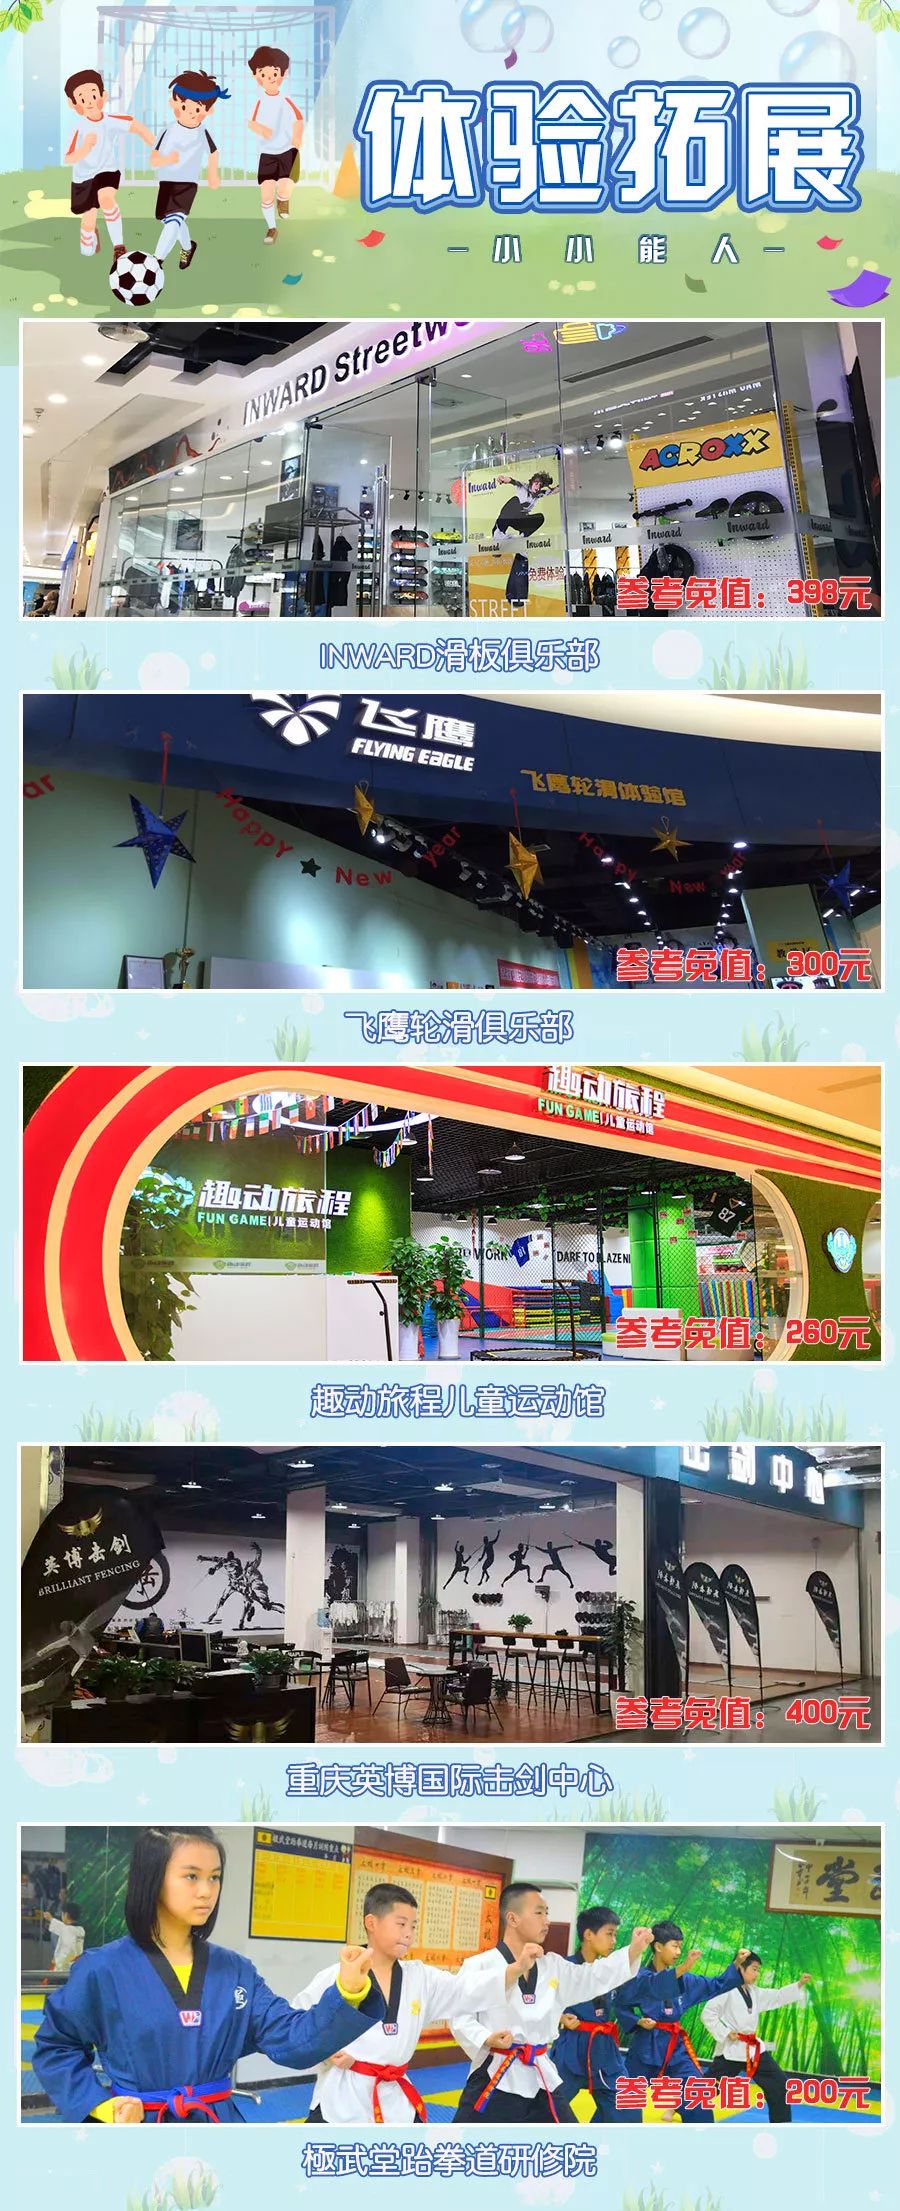 2019重庆亲子游览年票夏季版价格、游览地点